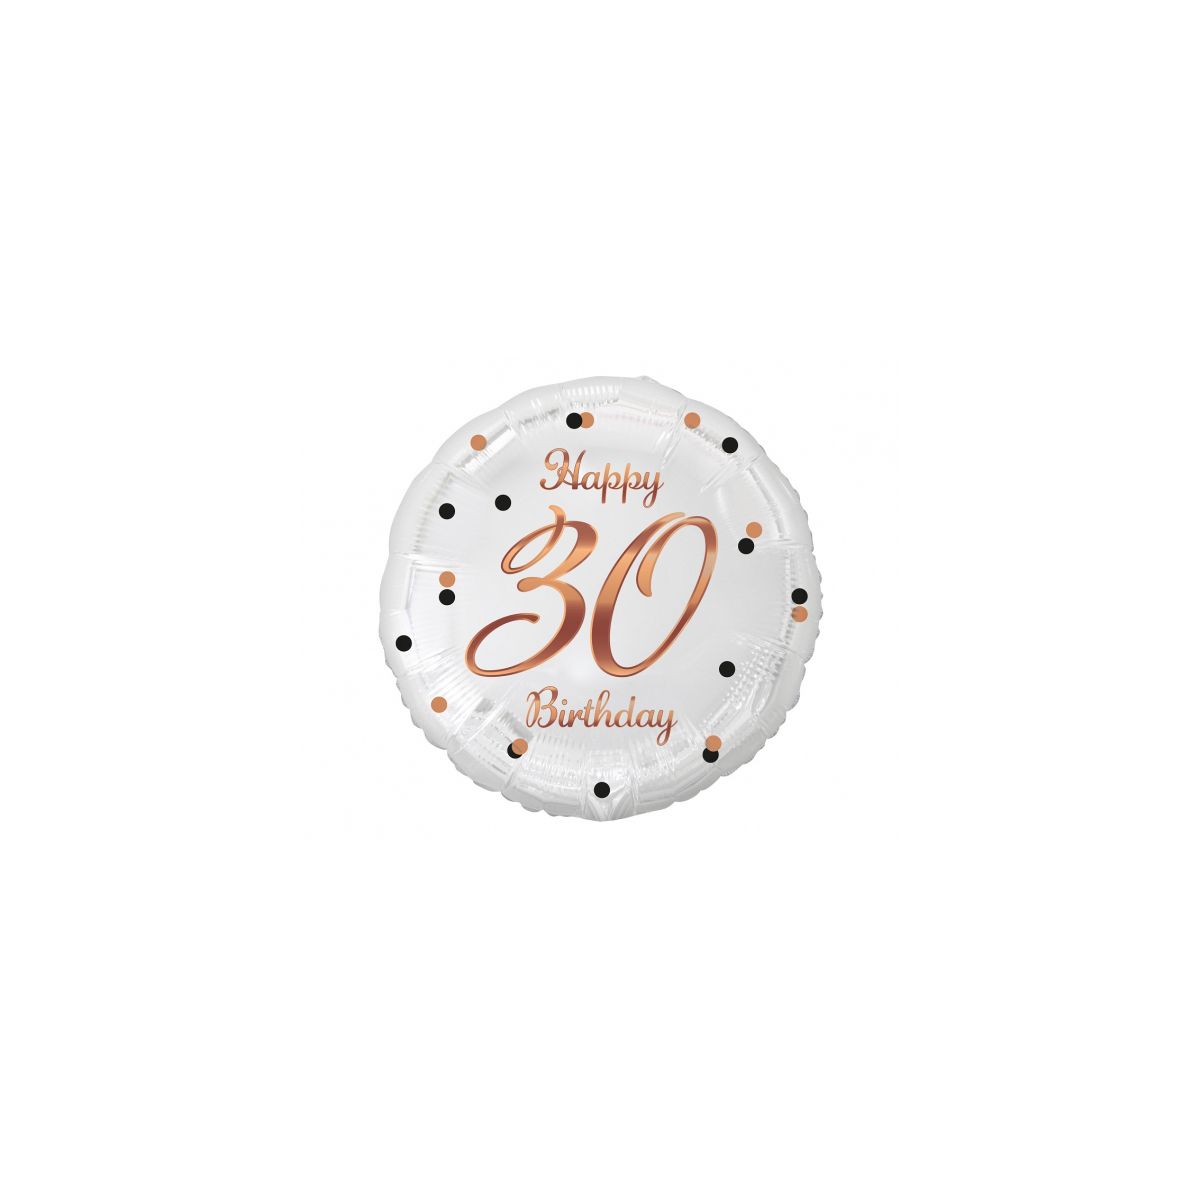 Balon foliowy Godan 30 Birthday, biały, nadruk różowo-złoty 18cal (FG-O30B)